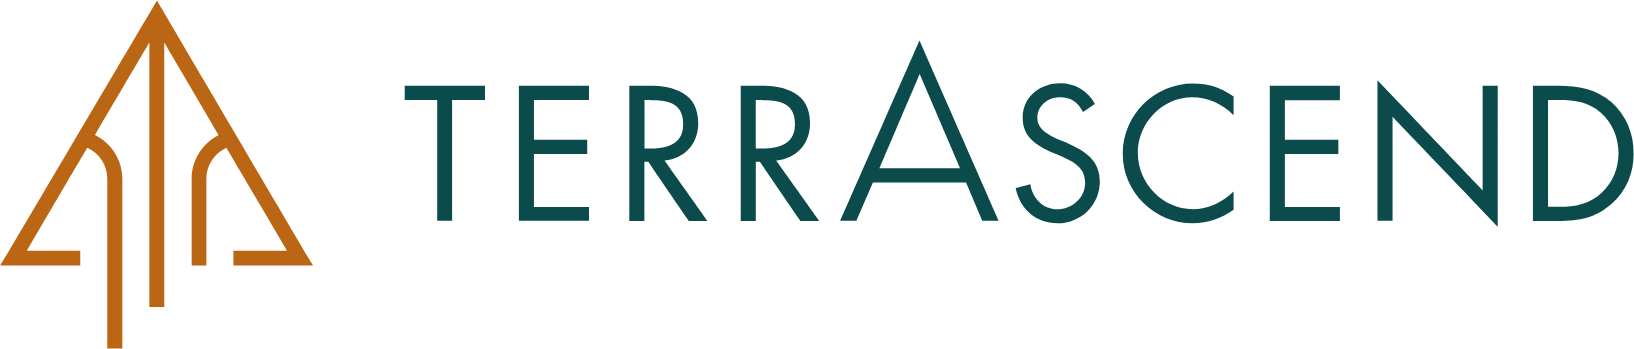 TerrAscend logo large (transparent PNG)